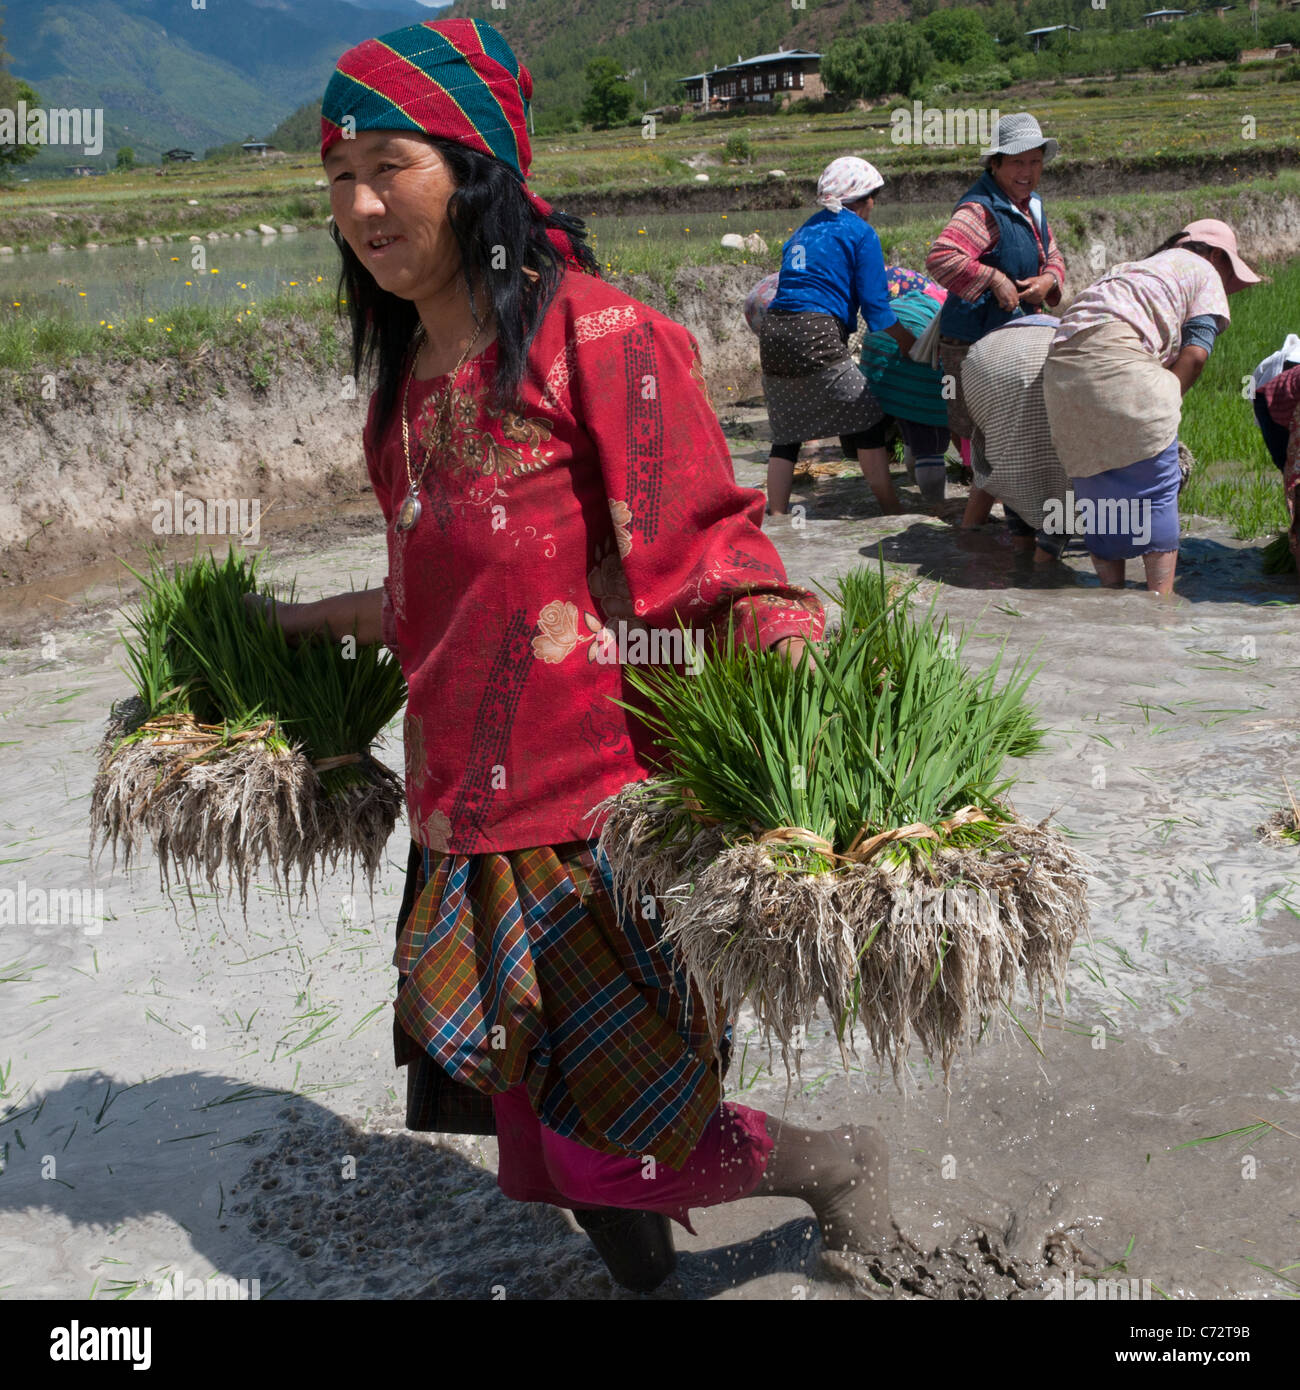 Anbau von Reis. Bäuerinnen Reis Triebe in Reisfeldern Umpflanzen. Paro-Tal. Bhutan Stockfoto